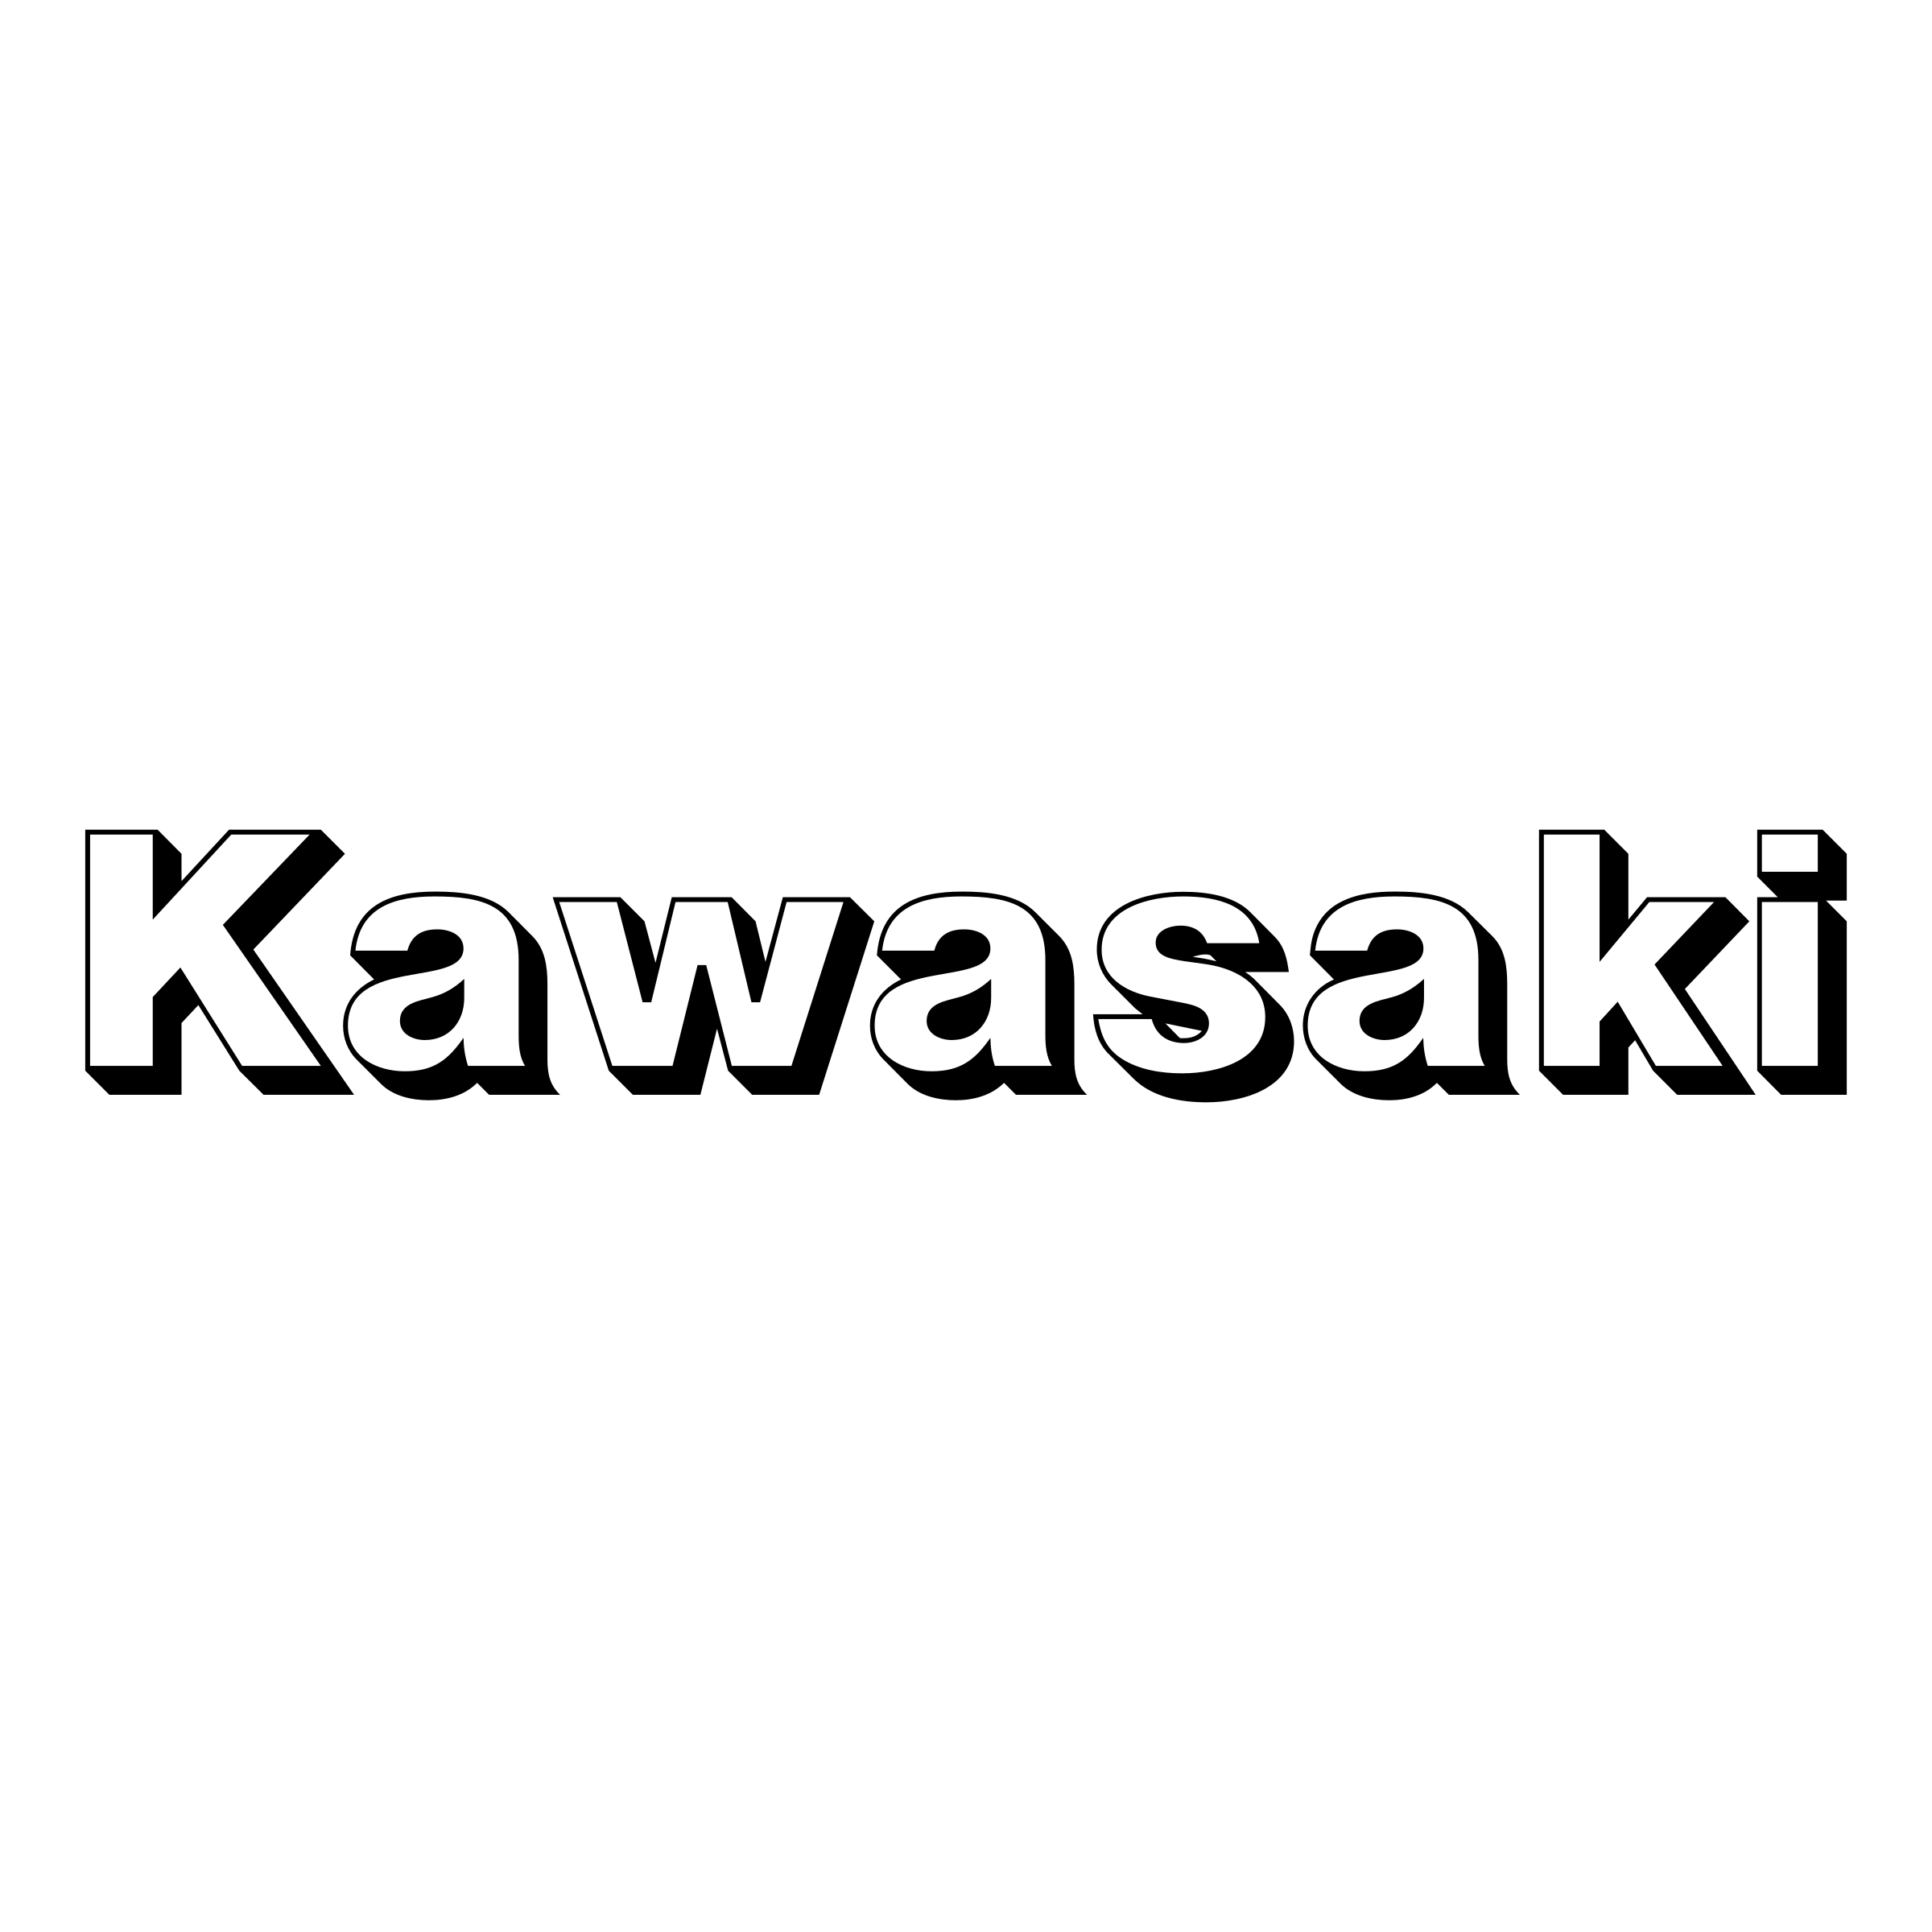 Kawasaki Motorcycle Logo Mean